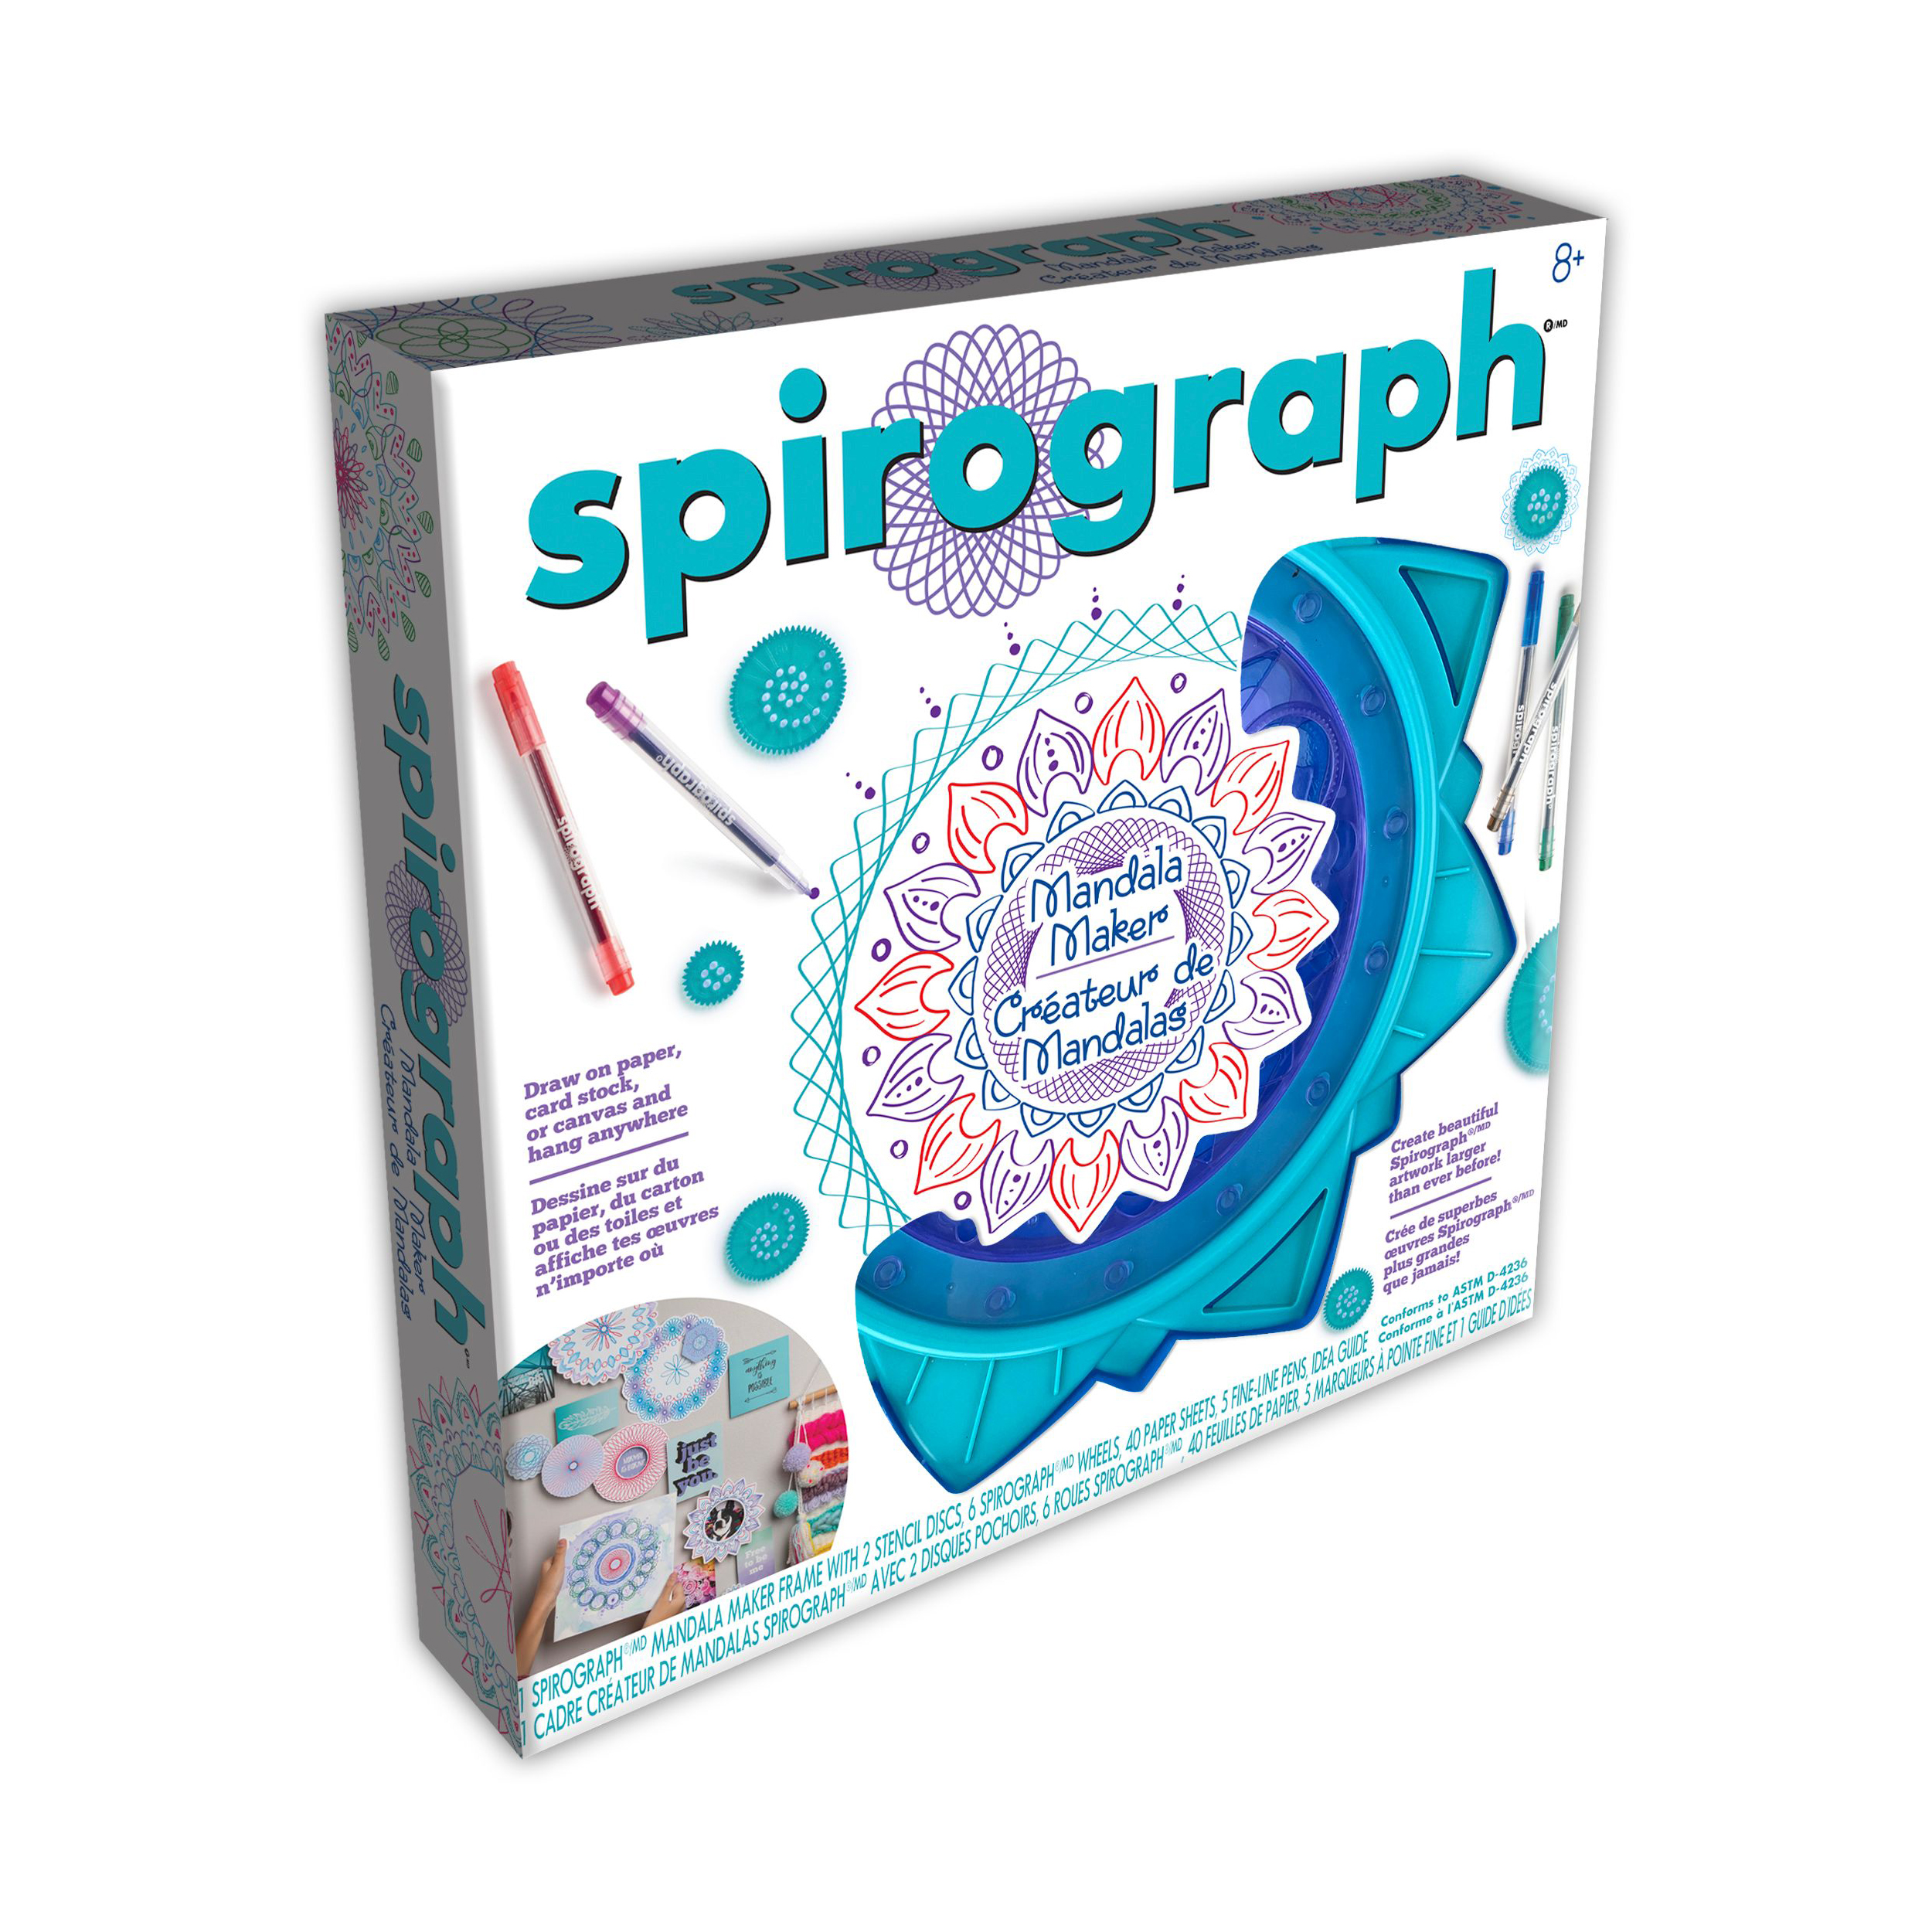 Spirograph Mandala Maker